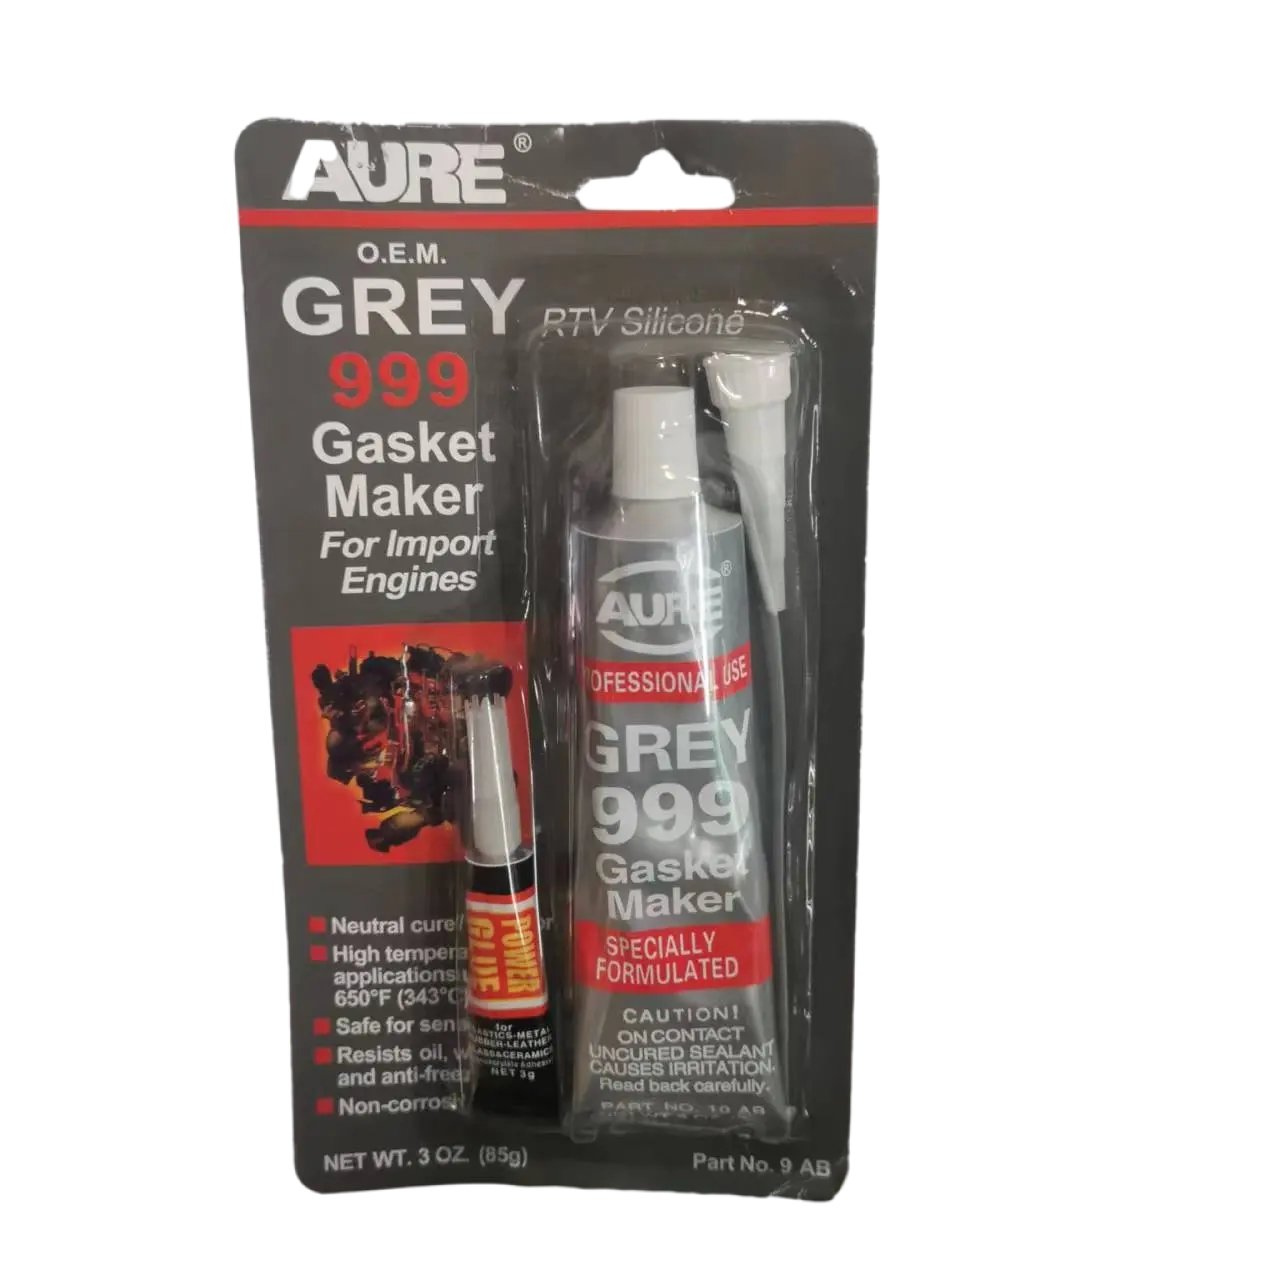 Aure Grey 999 производитель прокладок и силиконовый герметик Rtv для герметизации металлических фланцев